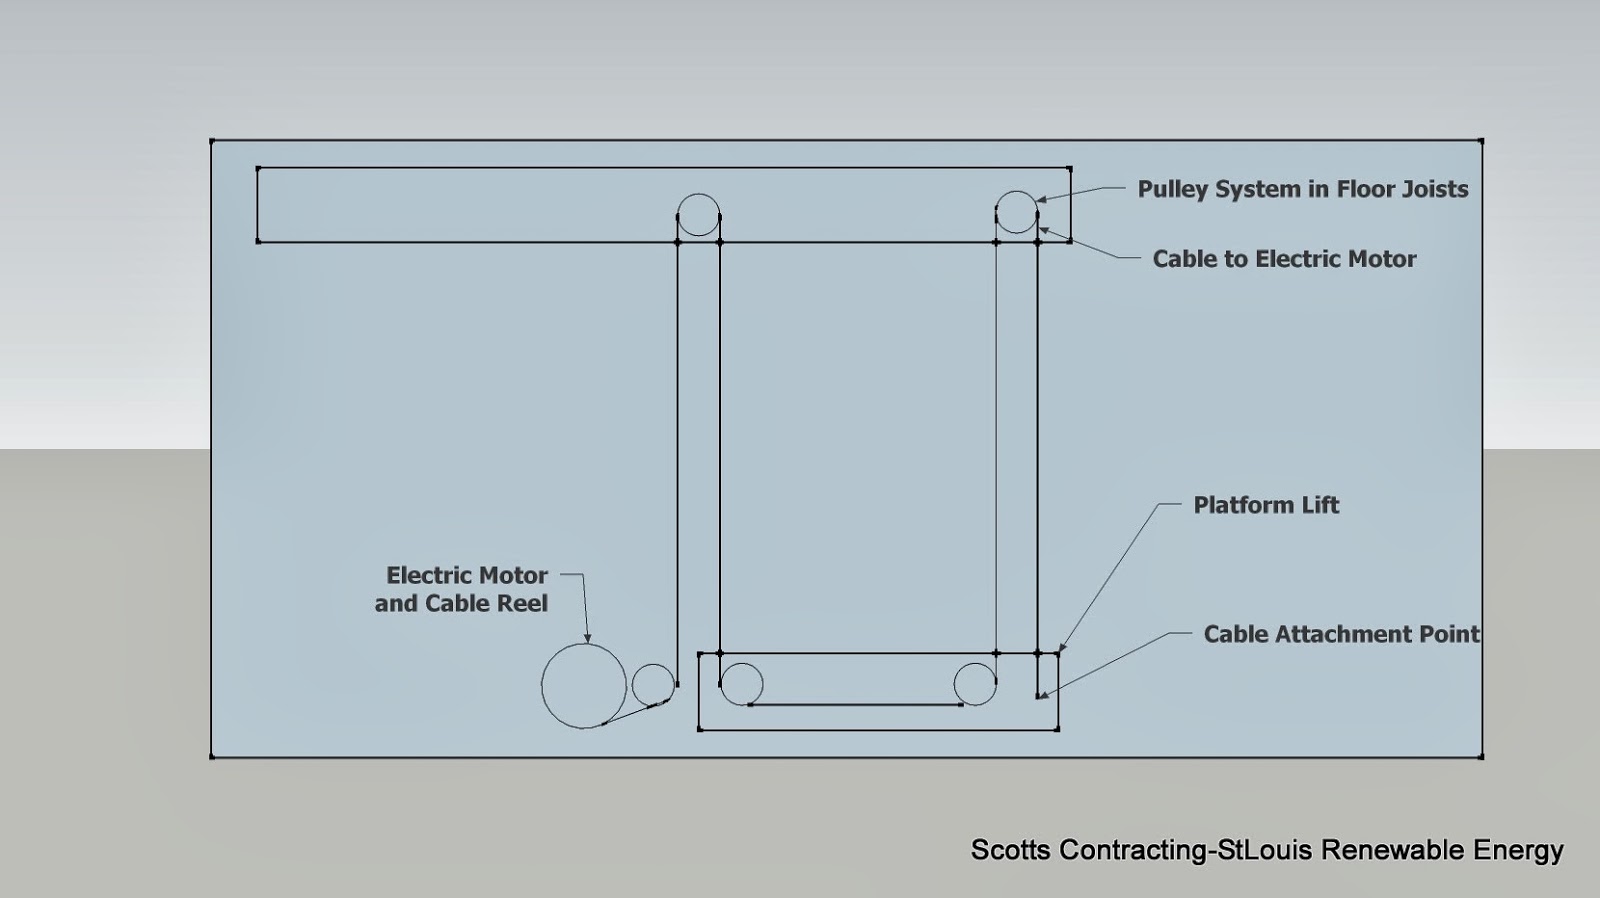 Scotts Contracting - StLouis Renewable Energy: Labor Saver Platform Lift Design